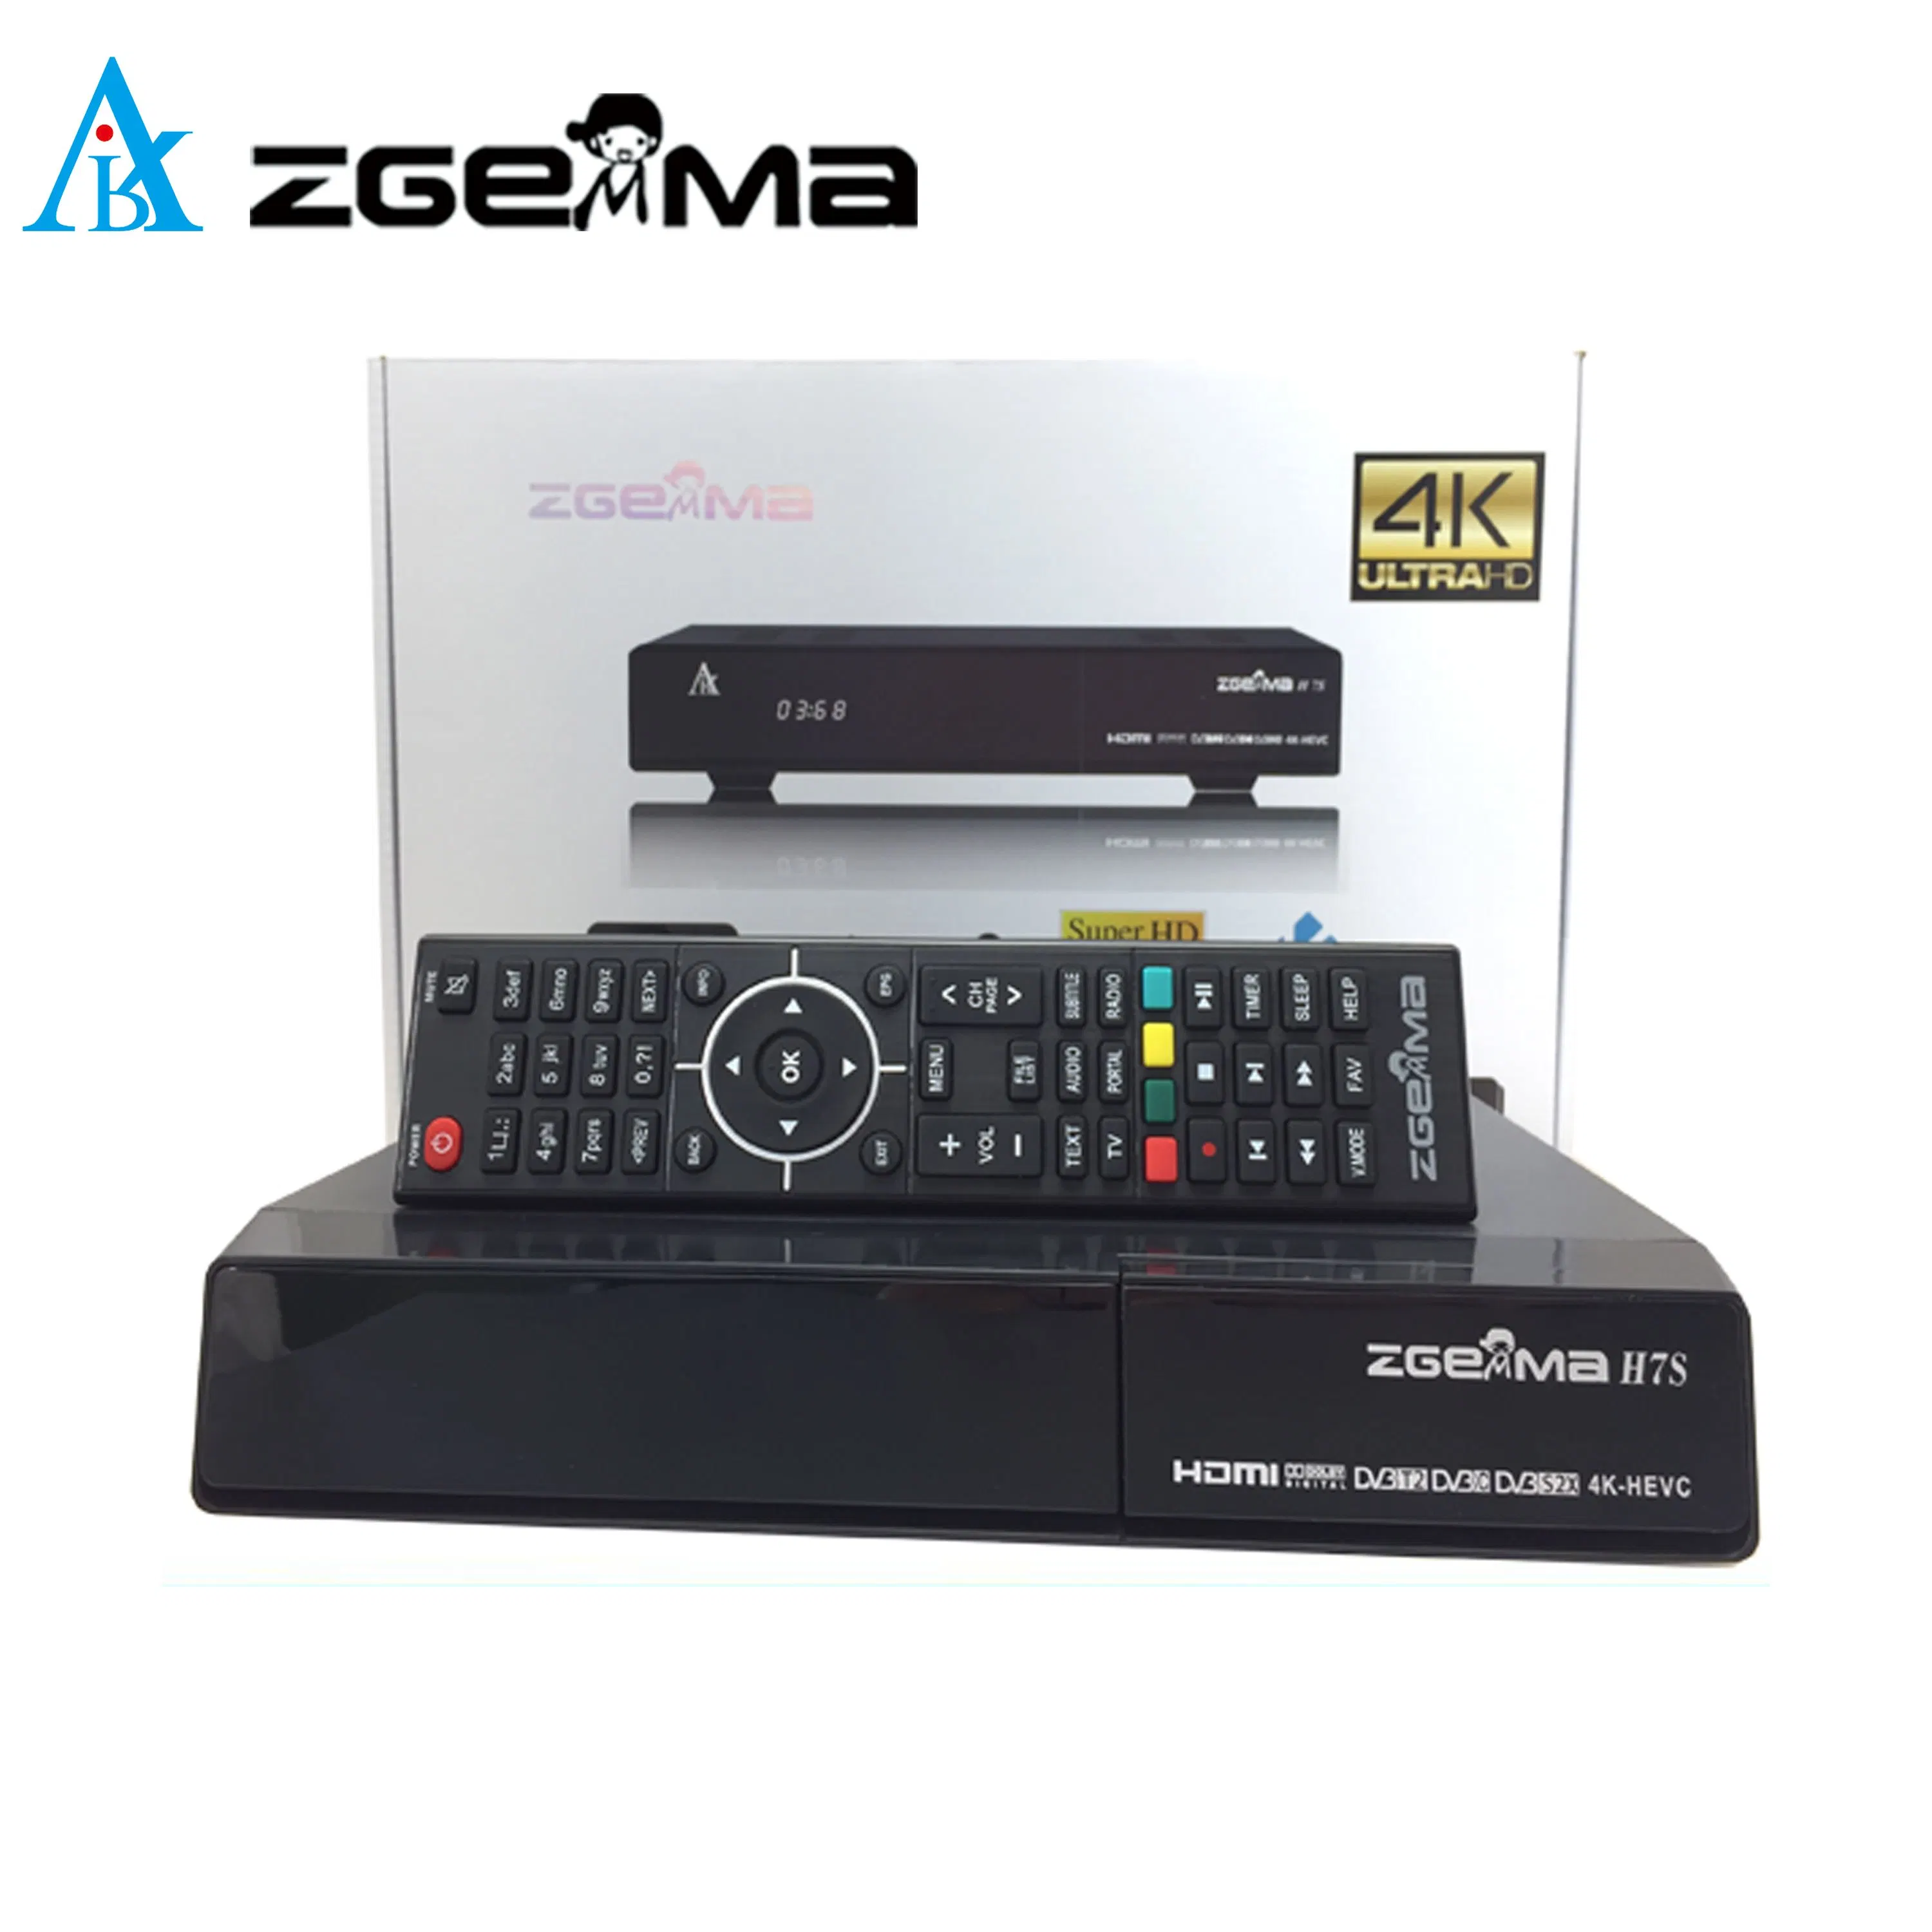 Tuner combiné DVB-S2X + DVB-T2/C IPTV et ci intégrés Récepteur TV par satellite 4K Zgemma H7S